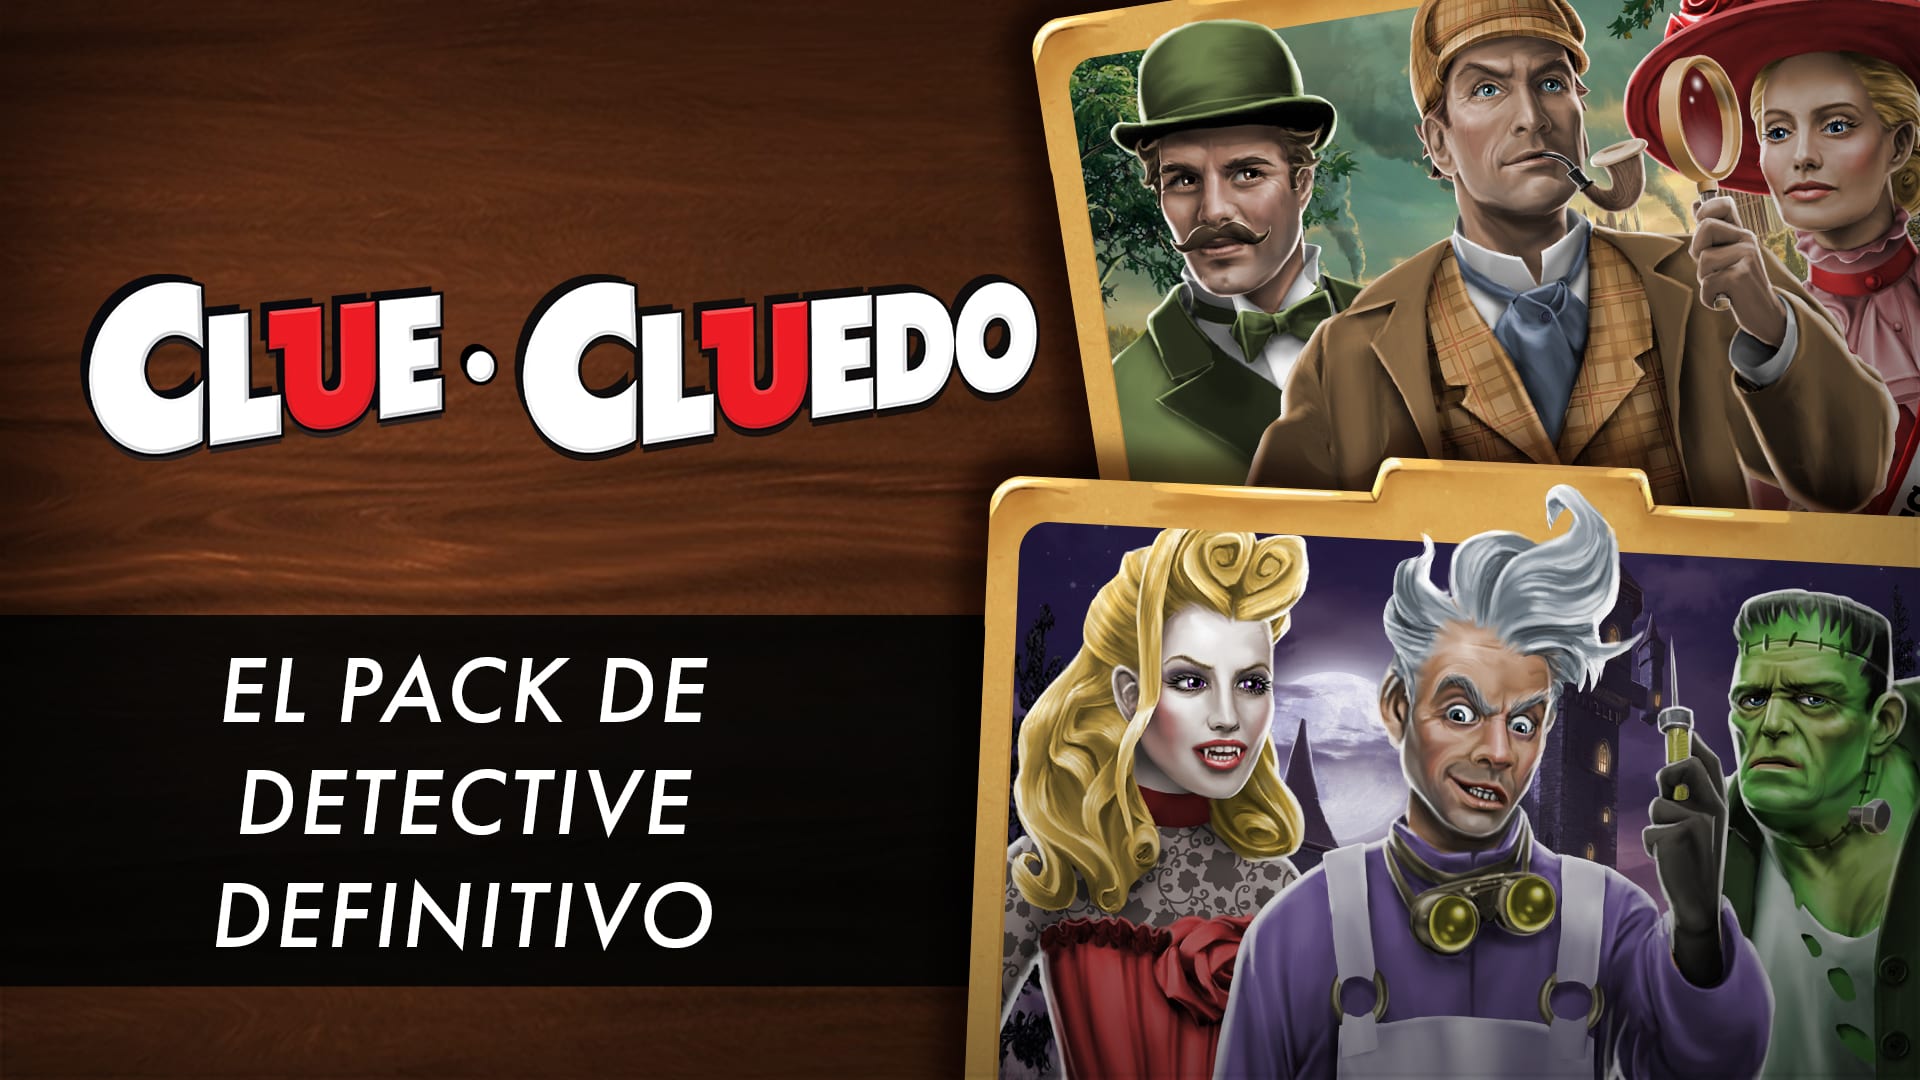 Clue/Cluedo: El pack de detective definitivo